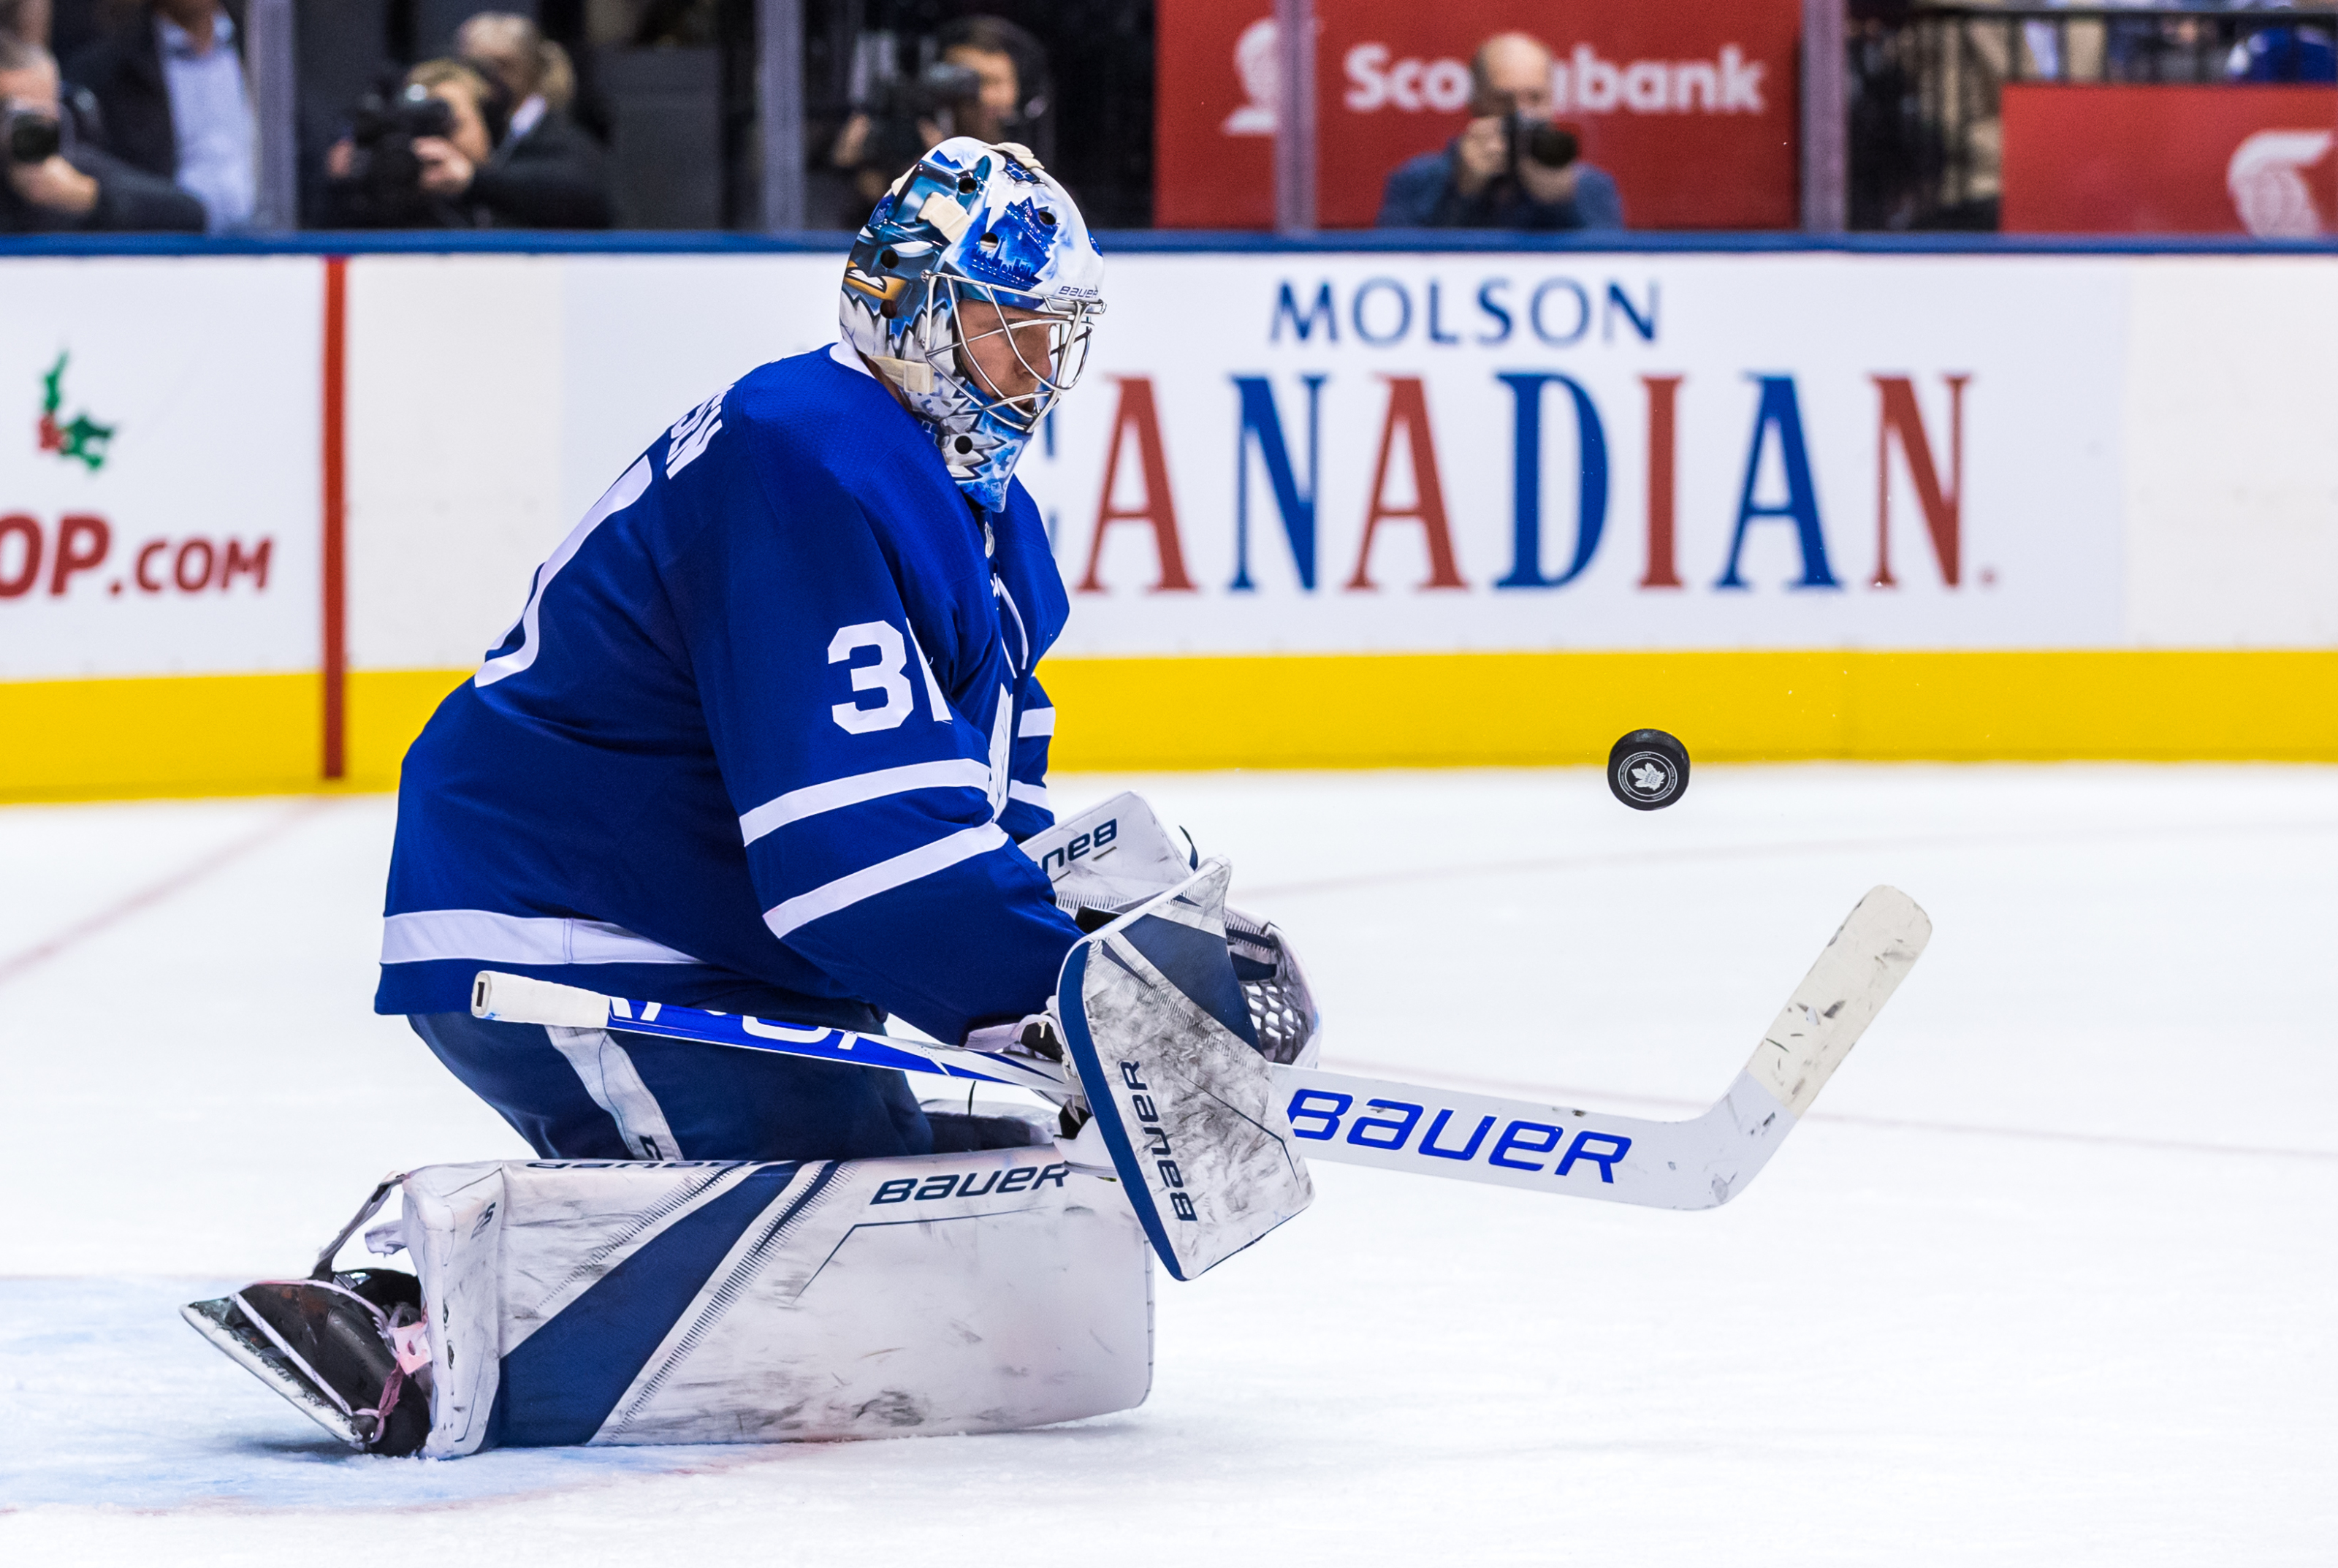 Leafs goalie Frederik Andersen set to return from injury